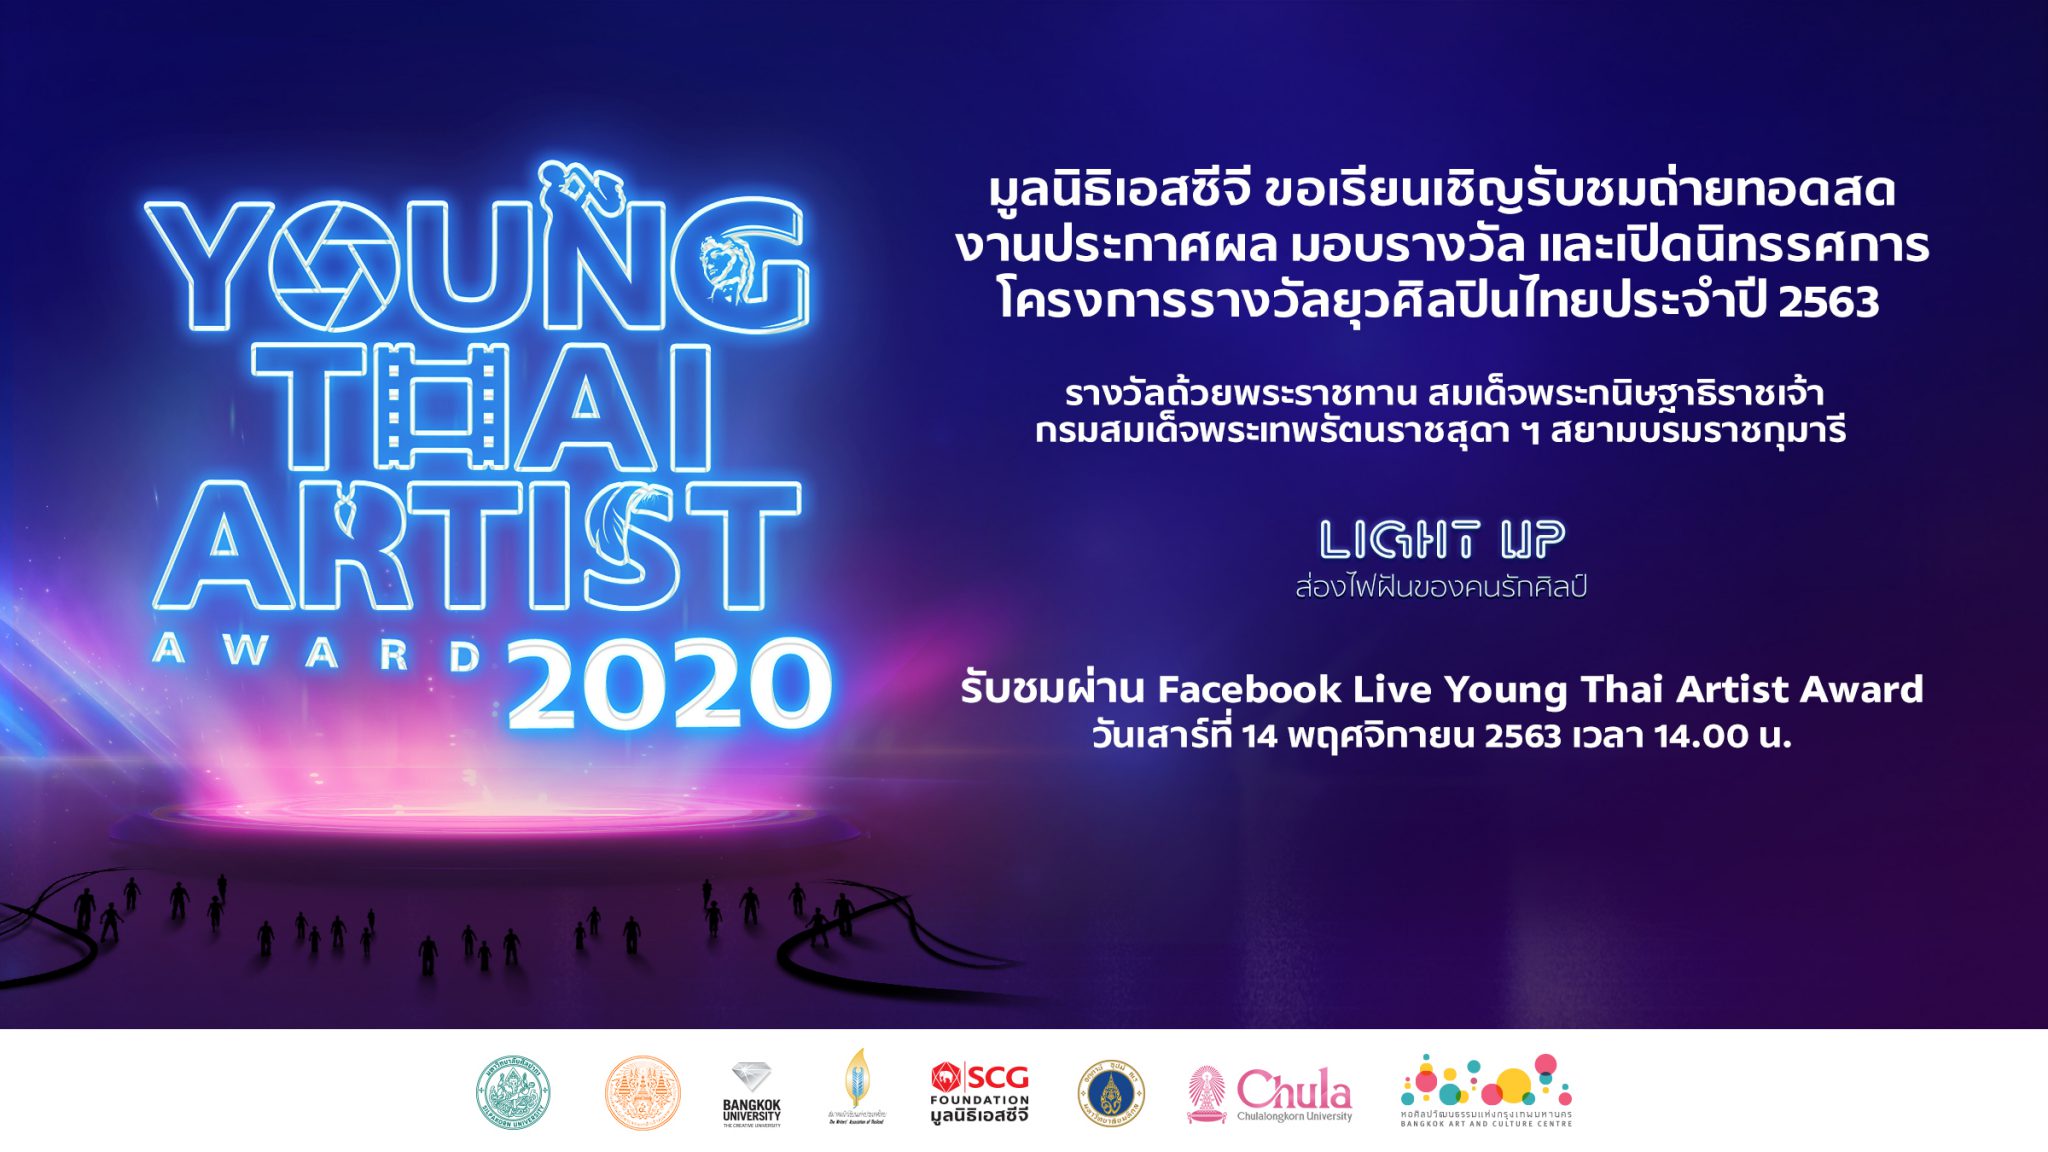 มูลนิธิเอสซีจี ชวนร่วมงานประกาศผล มอบรางวัล และเปิดนิทรรศการ โครงการรางวัลยุวศิลปินไทย 2563 (Young Thai Artist Award 2020) ทาง Online ผ่านระบบ Live Facebook และ Zoom webinar